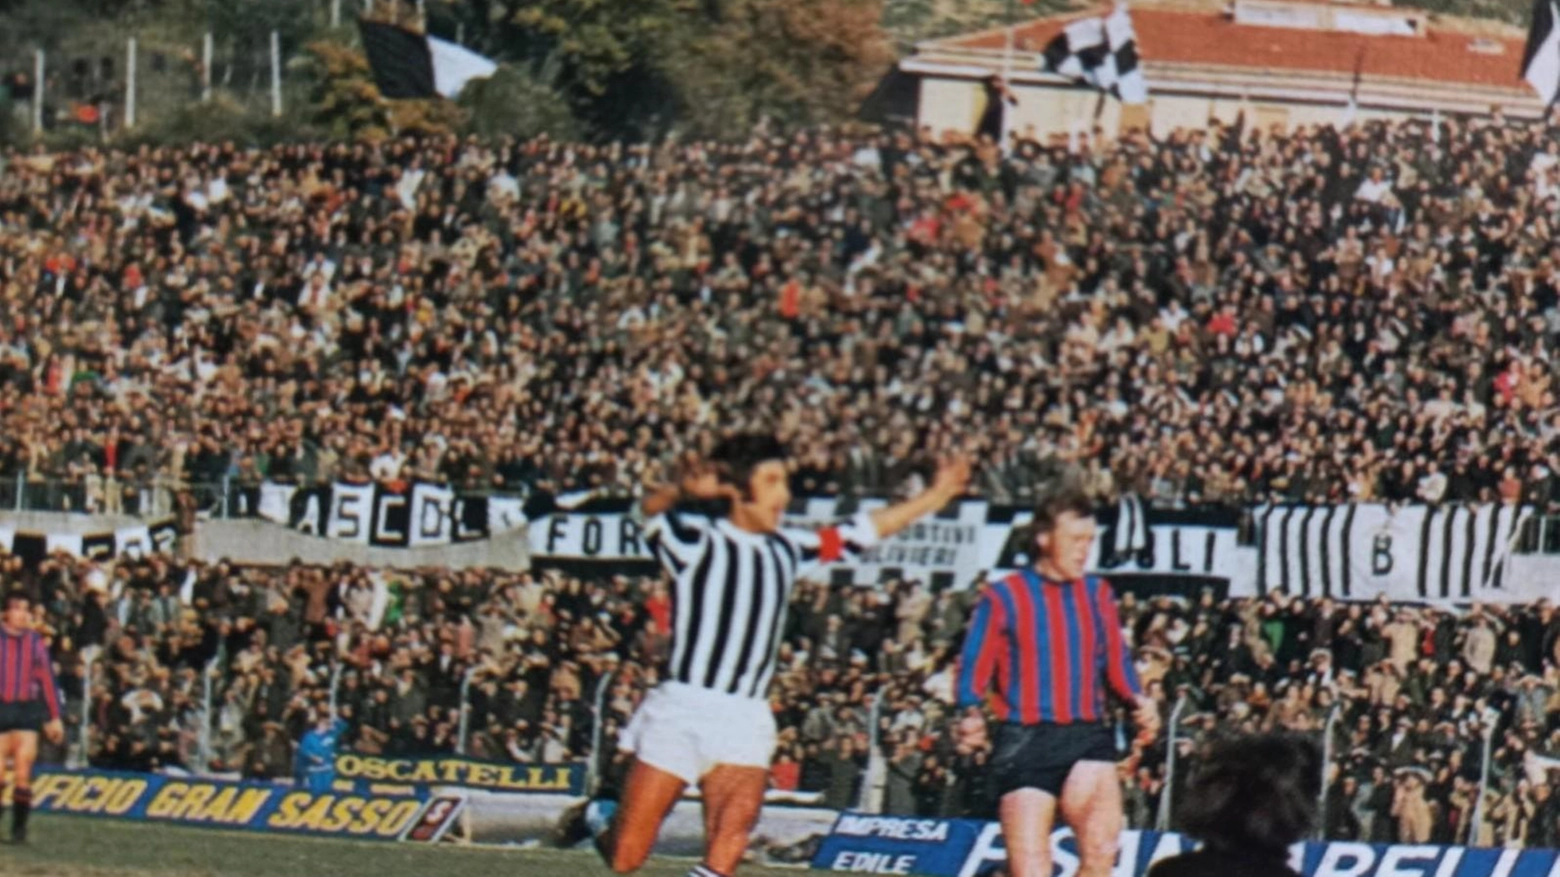 Il 9 giugno 1974 l'Ascoli festeggia la promozione in Serie A, emozioni e ricordi di una squadra indimenticabile. Protagonisti e momenti che restano nel cuore dei tifosi.